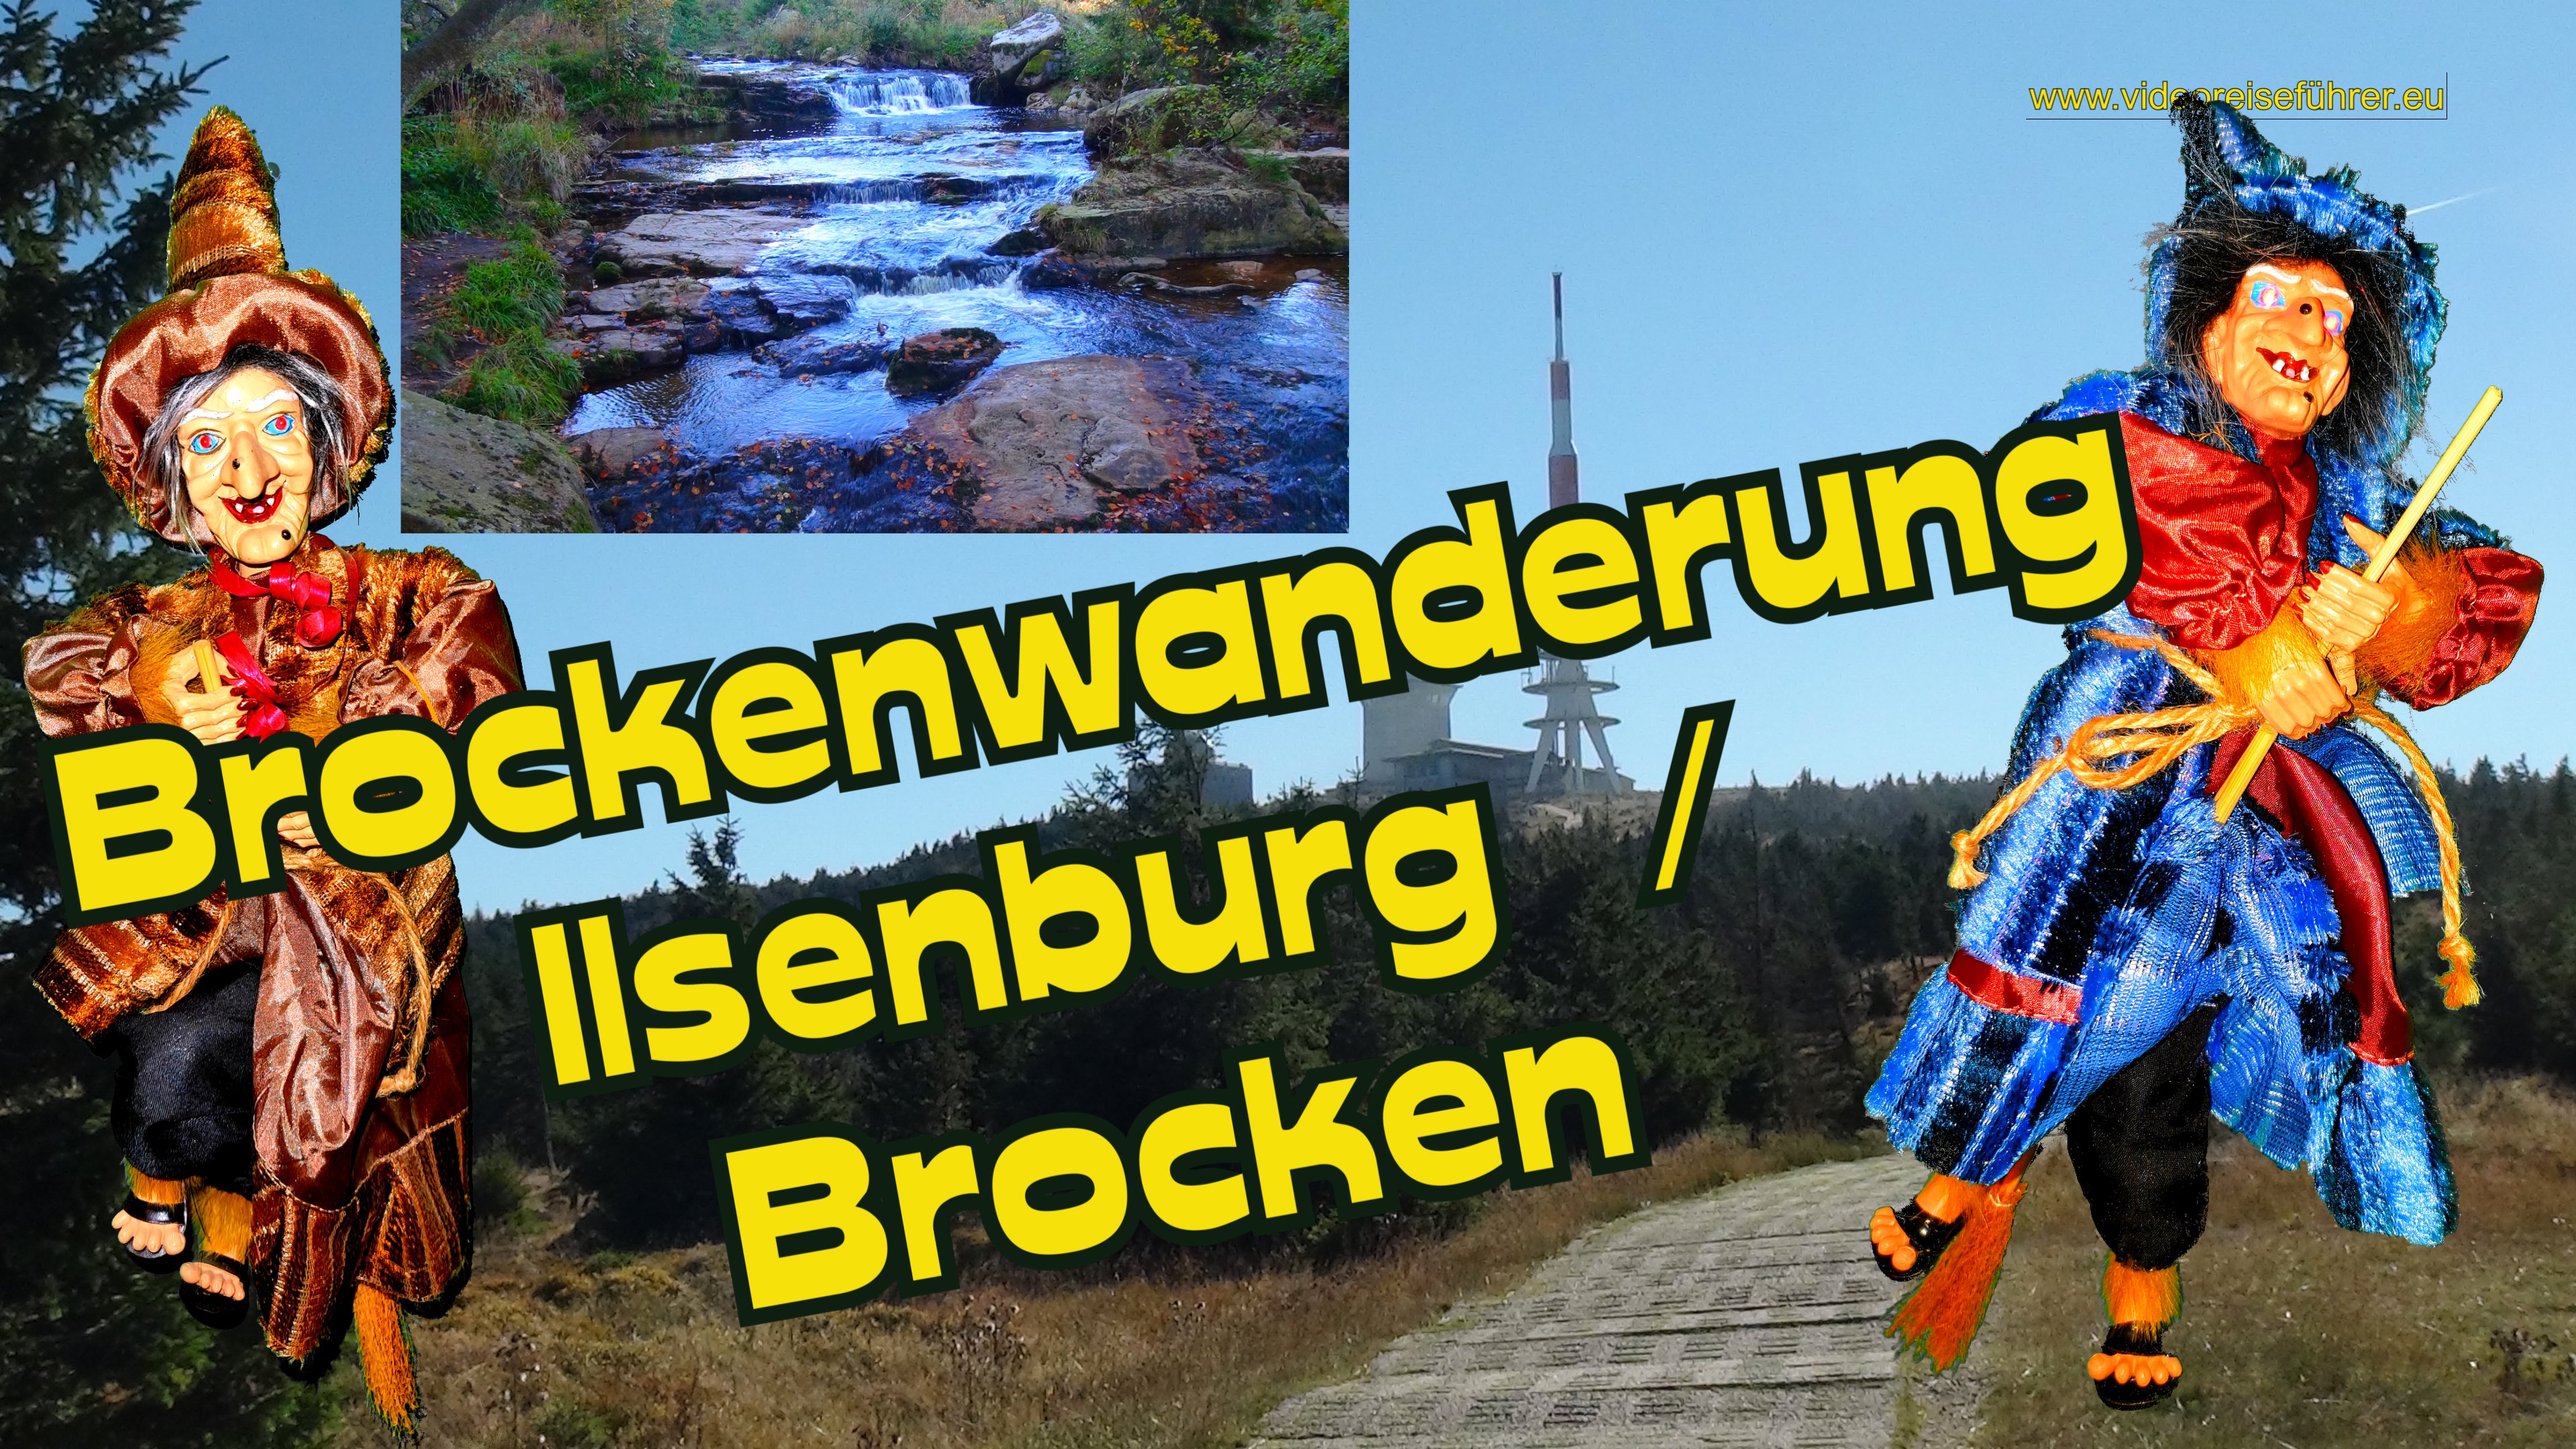 Brockenwanderung von Ilsenburg zum Brocken - Videoreiseführer Harz von Ulf Zaspel - Immobilien